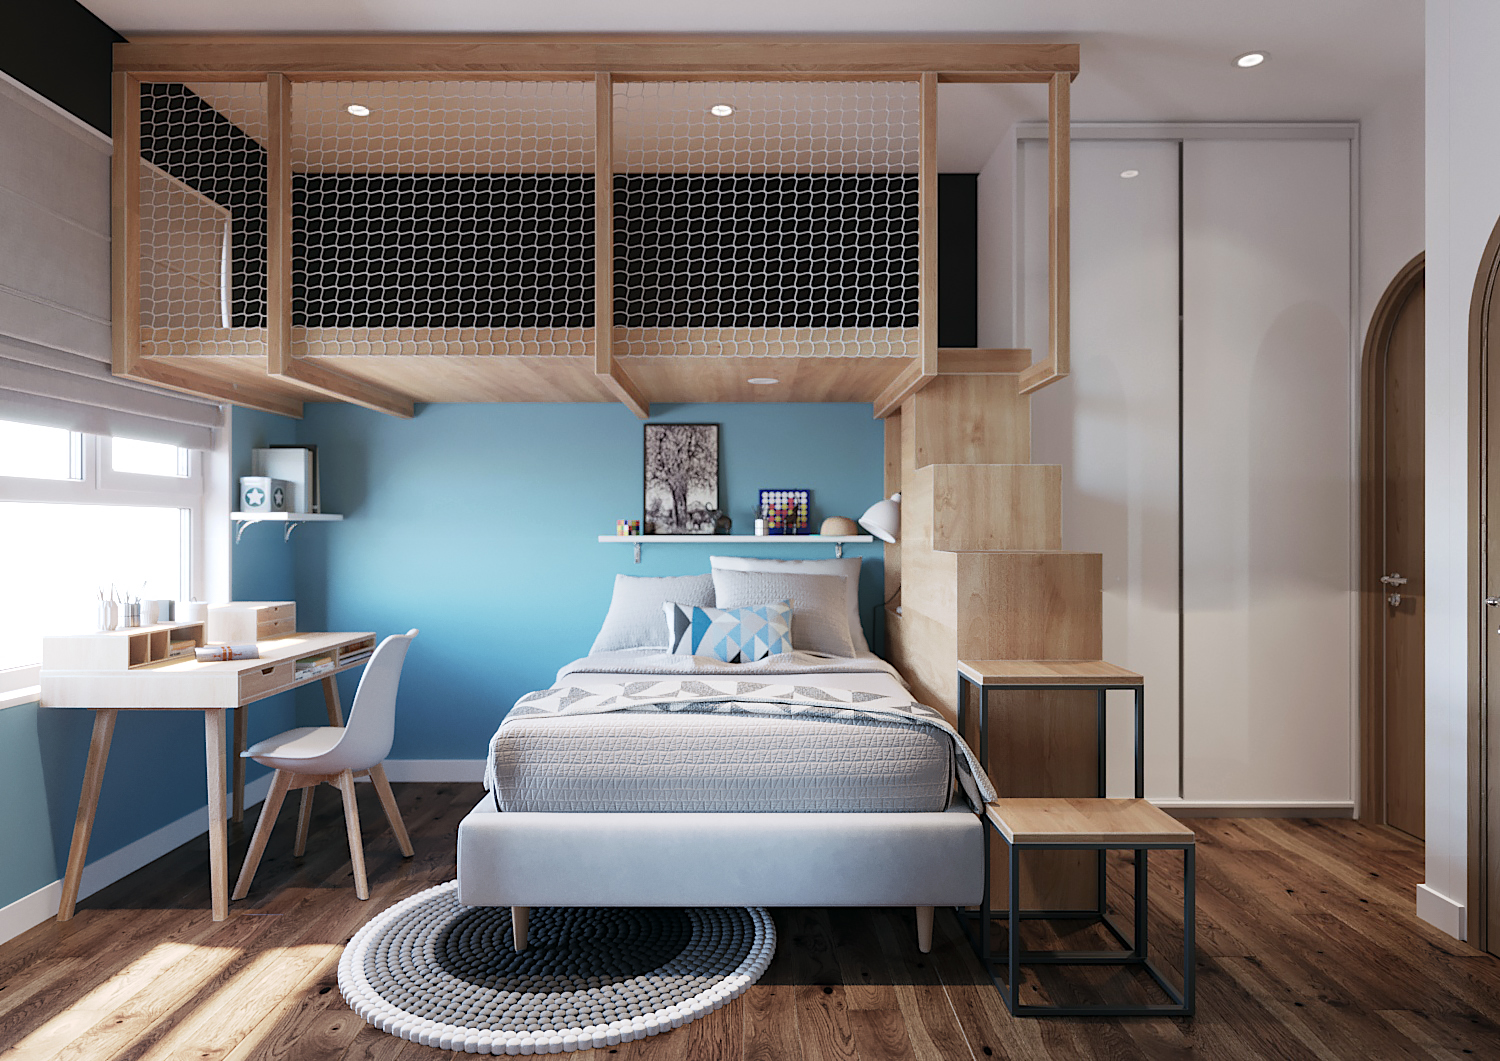 Top 5 mẫu nhà với phong cách thiết kế nội thất đẹp và phổ biến năm 2020,  giúp truyền cảm hứng cho không gian sống của bạn. - KaG Internior Design